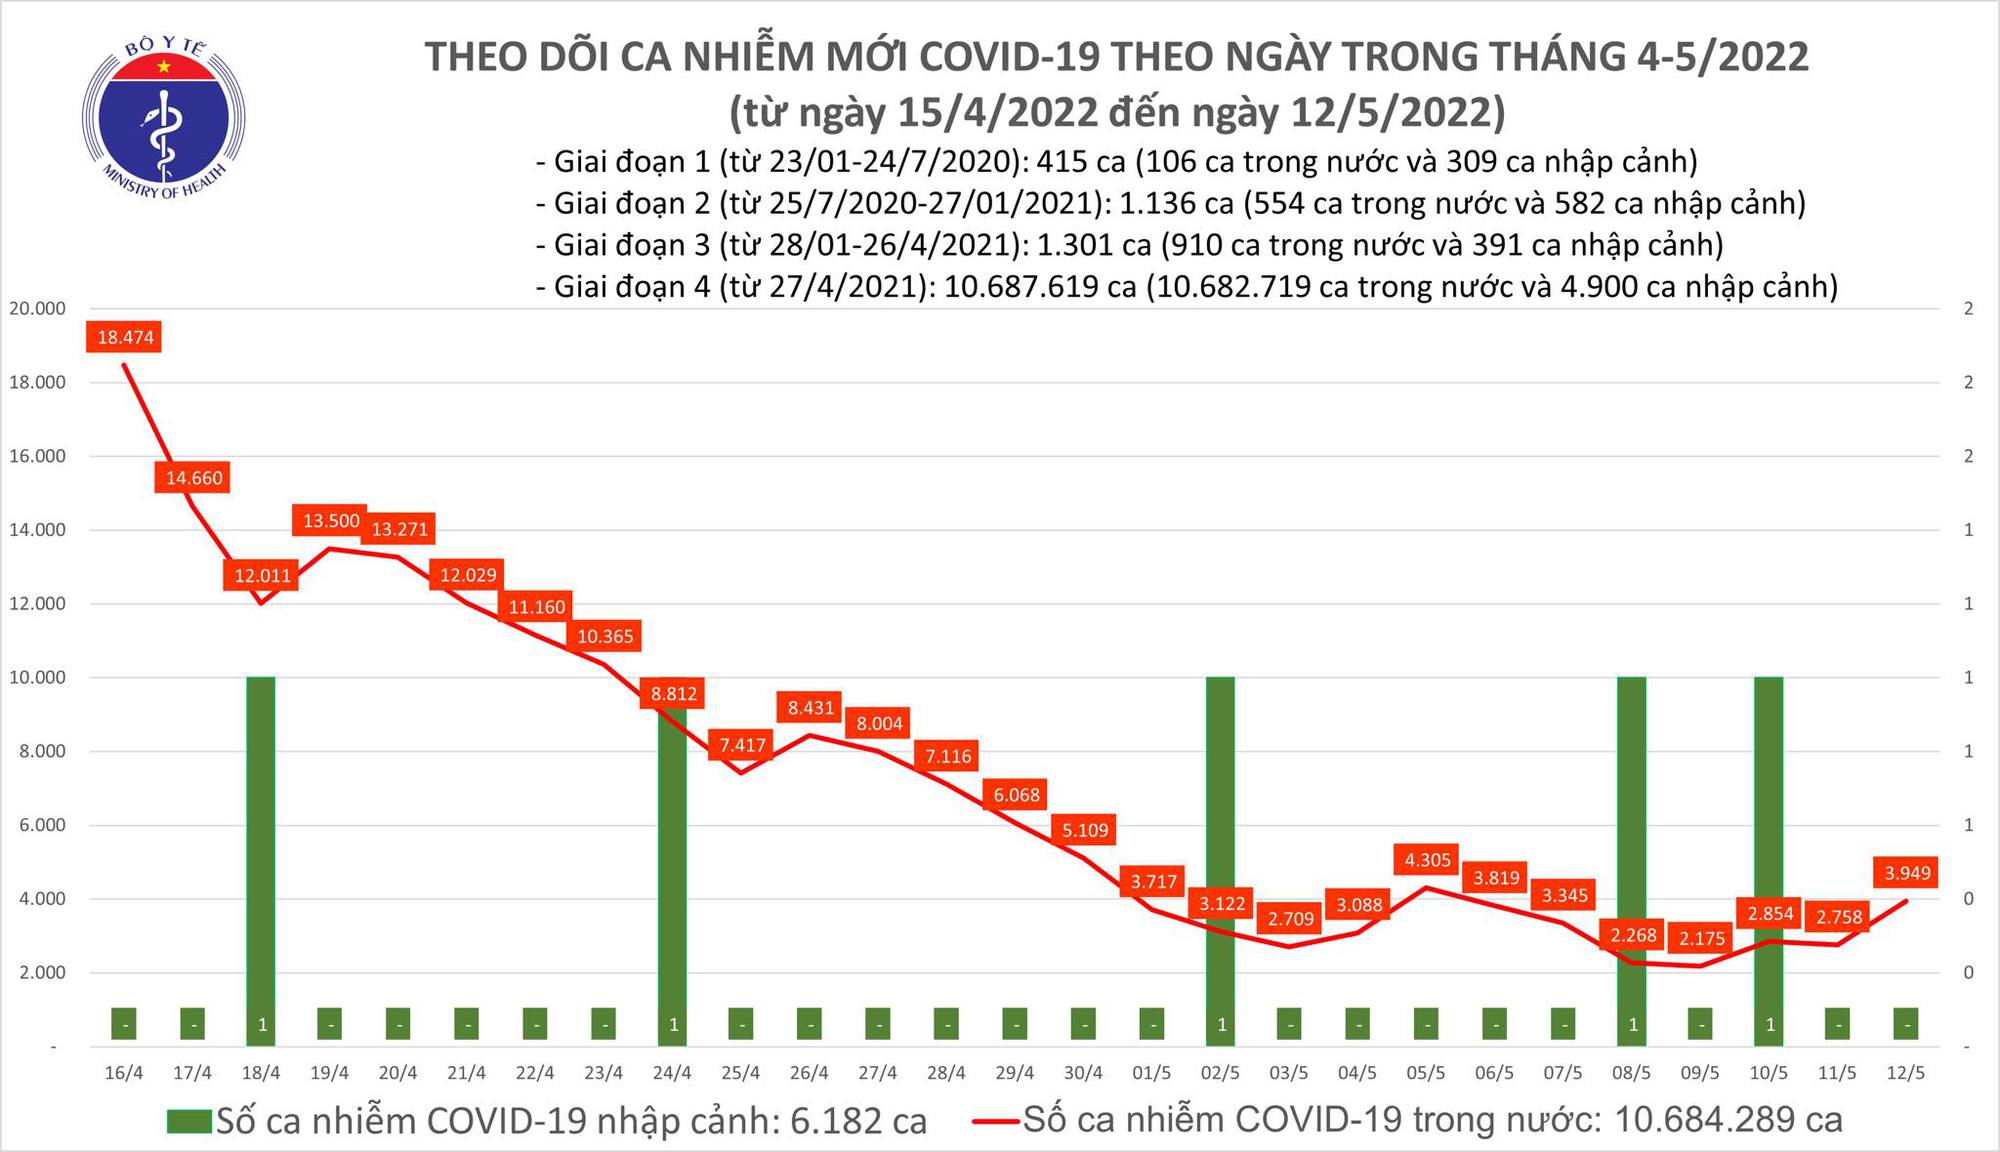 Ngày 12/5: Có 3.949 ca COVID-19 mới, số khỏi bệnh nhiều gần gấp đôi - Ảnh 1.